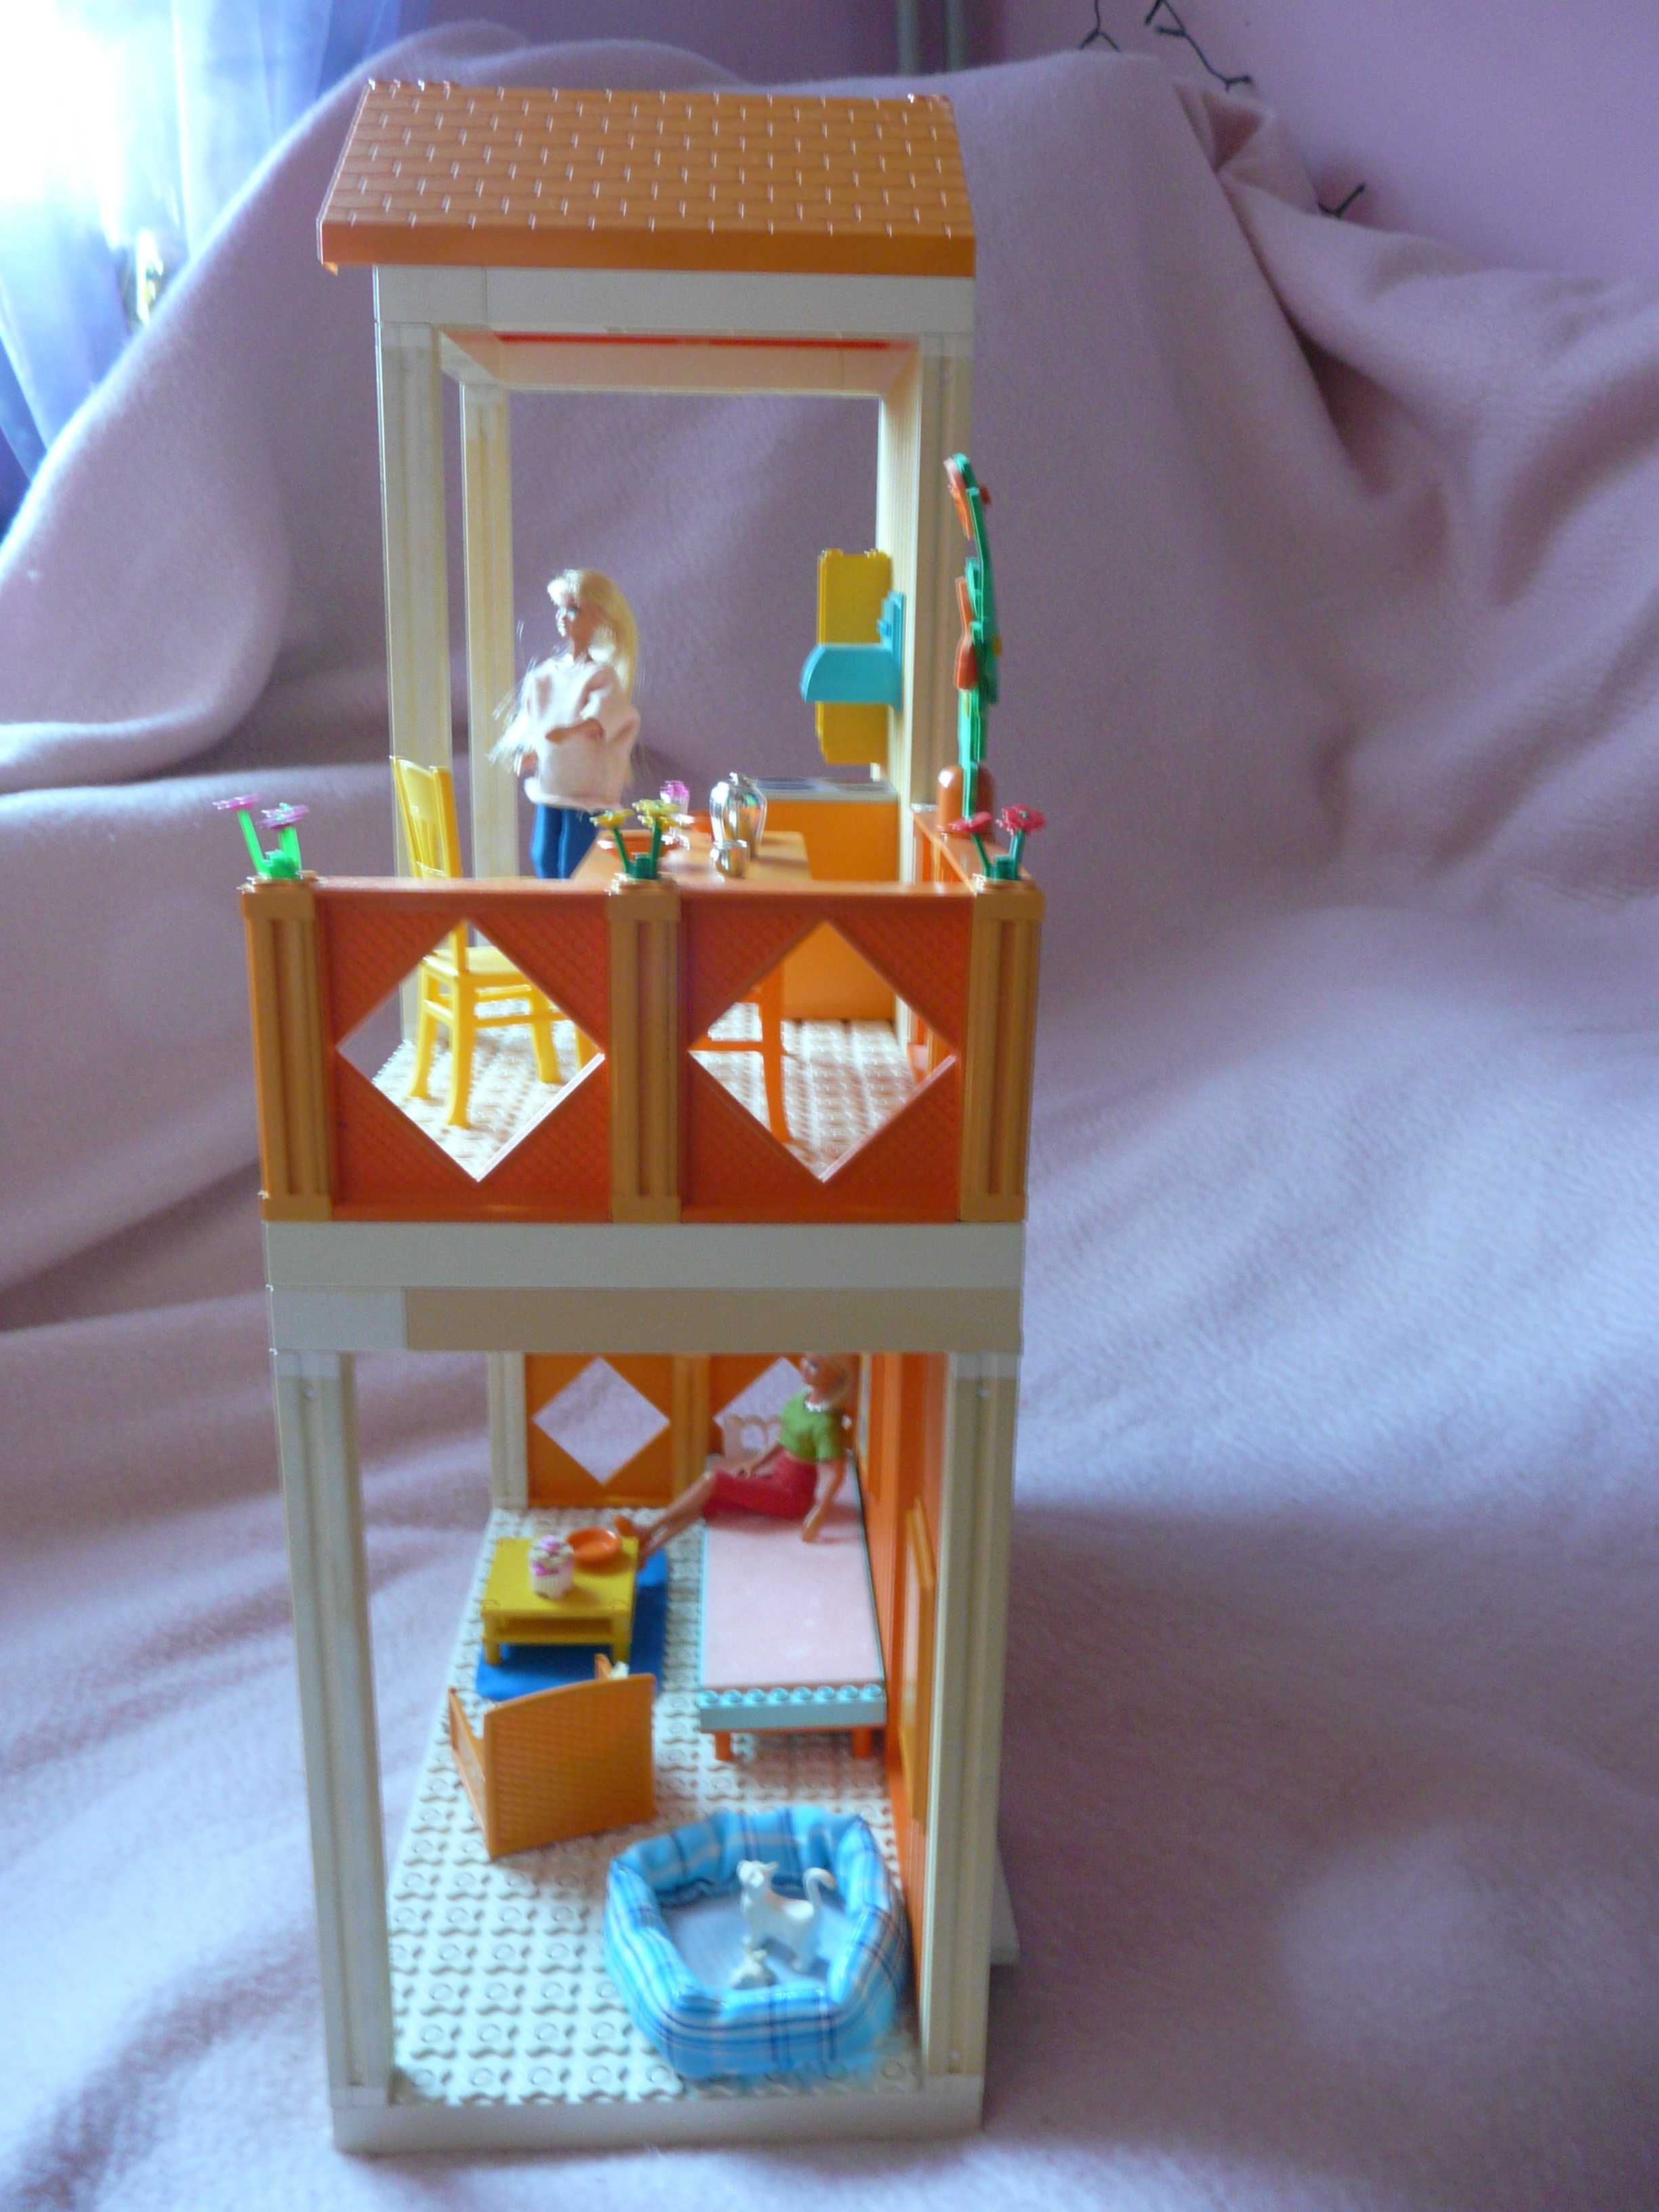 LEGO scala belville friends piętrowy domek dla lalek 60 cm wysokość